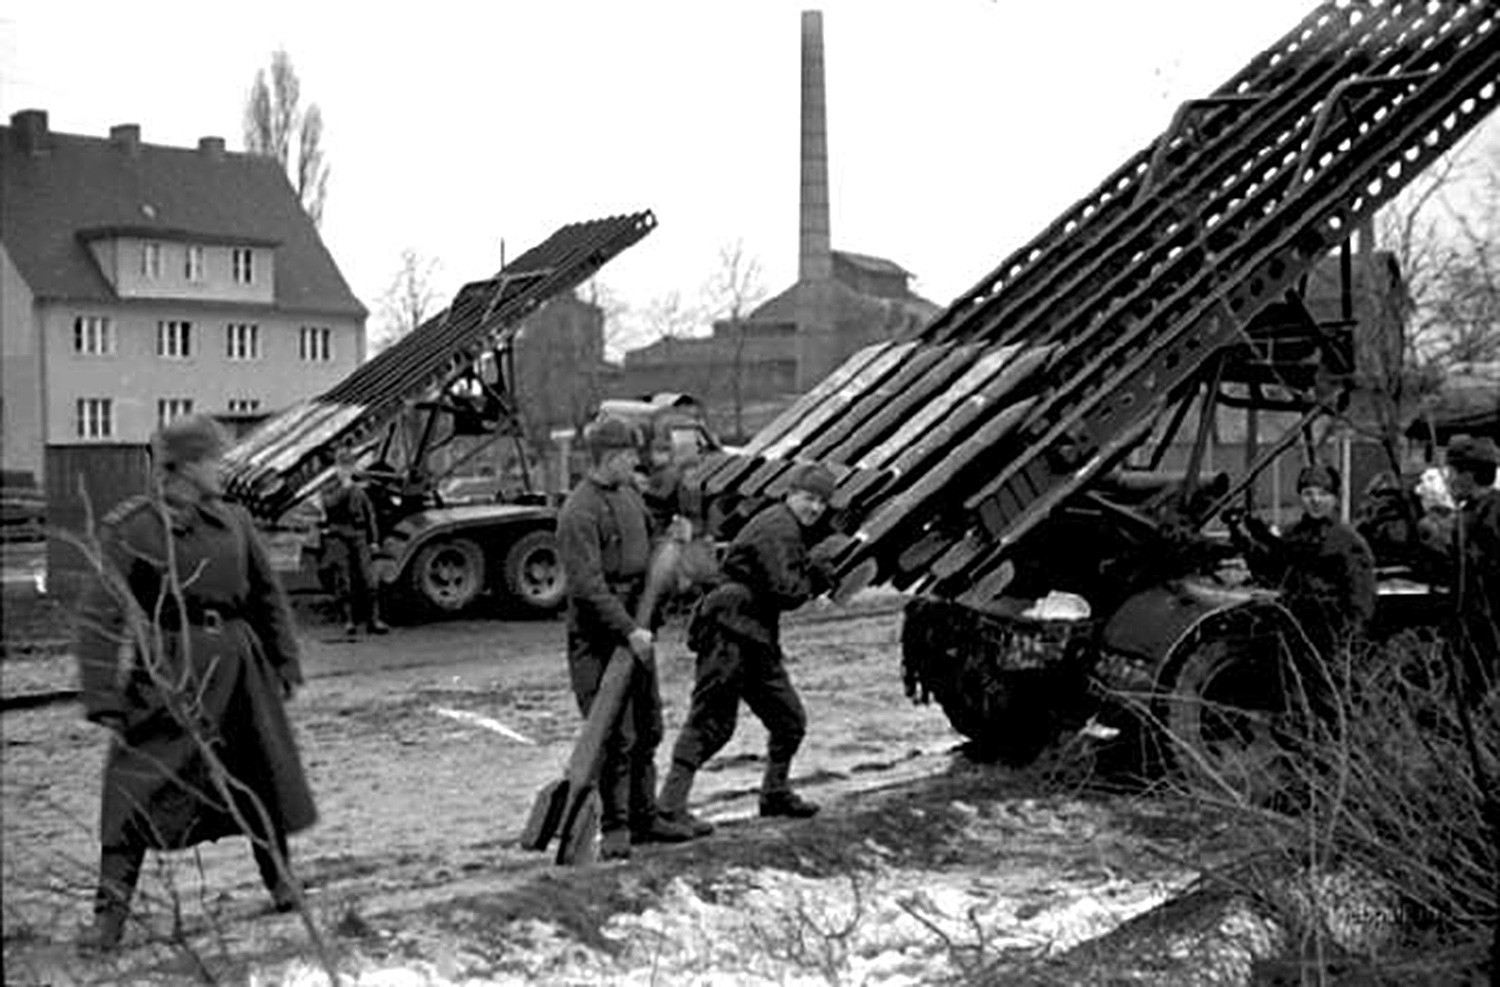 Kekuatan tembakan salvo (tembakan serentak) Katyusha sebanding dengan 70 senjata artileri berat yang digabungkan. 